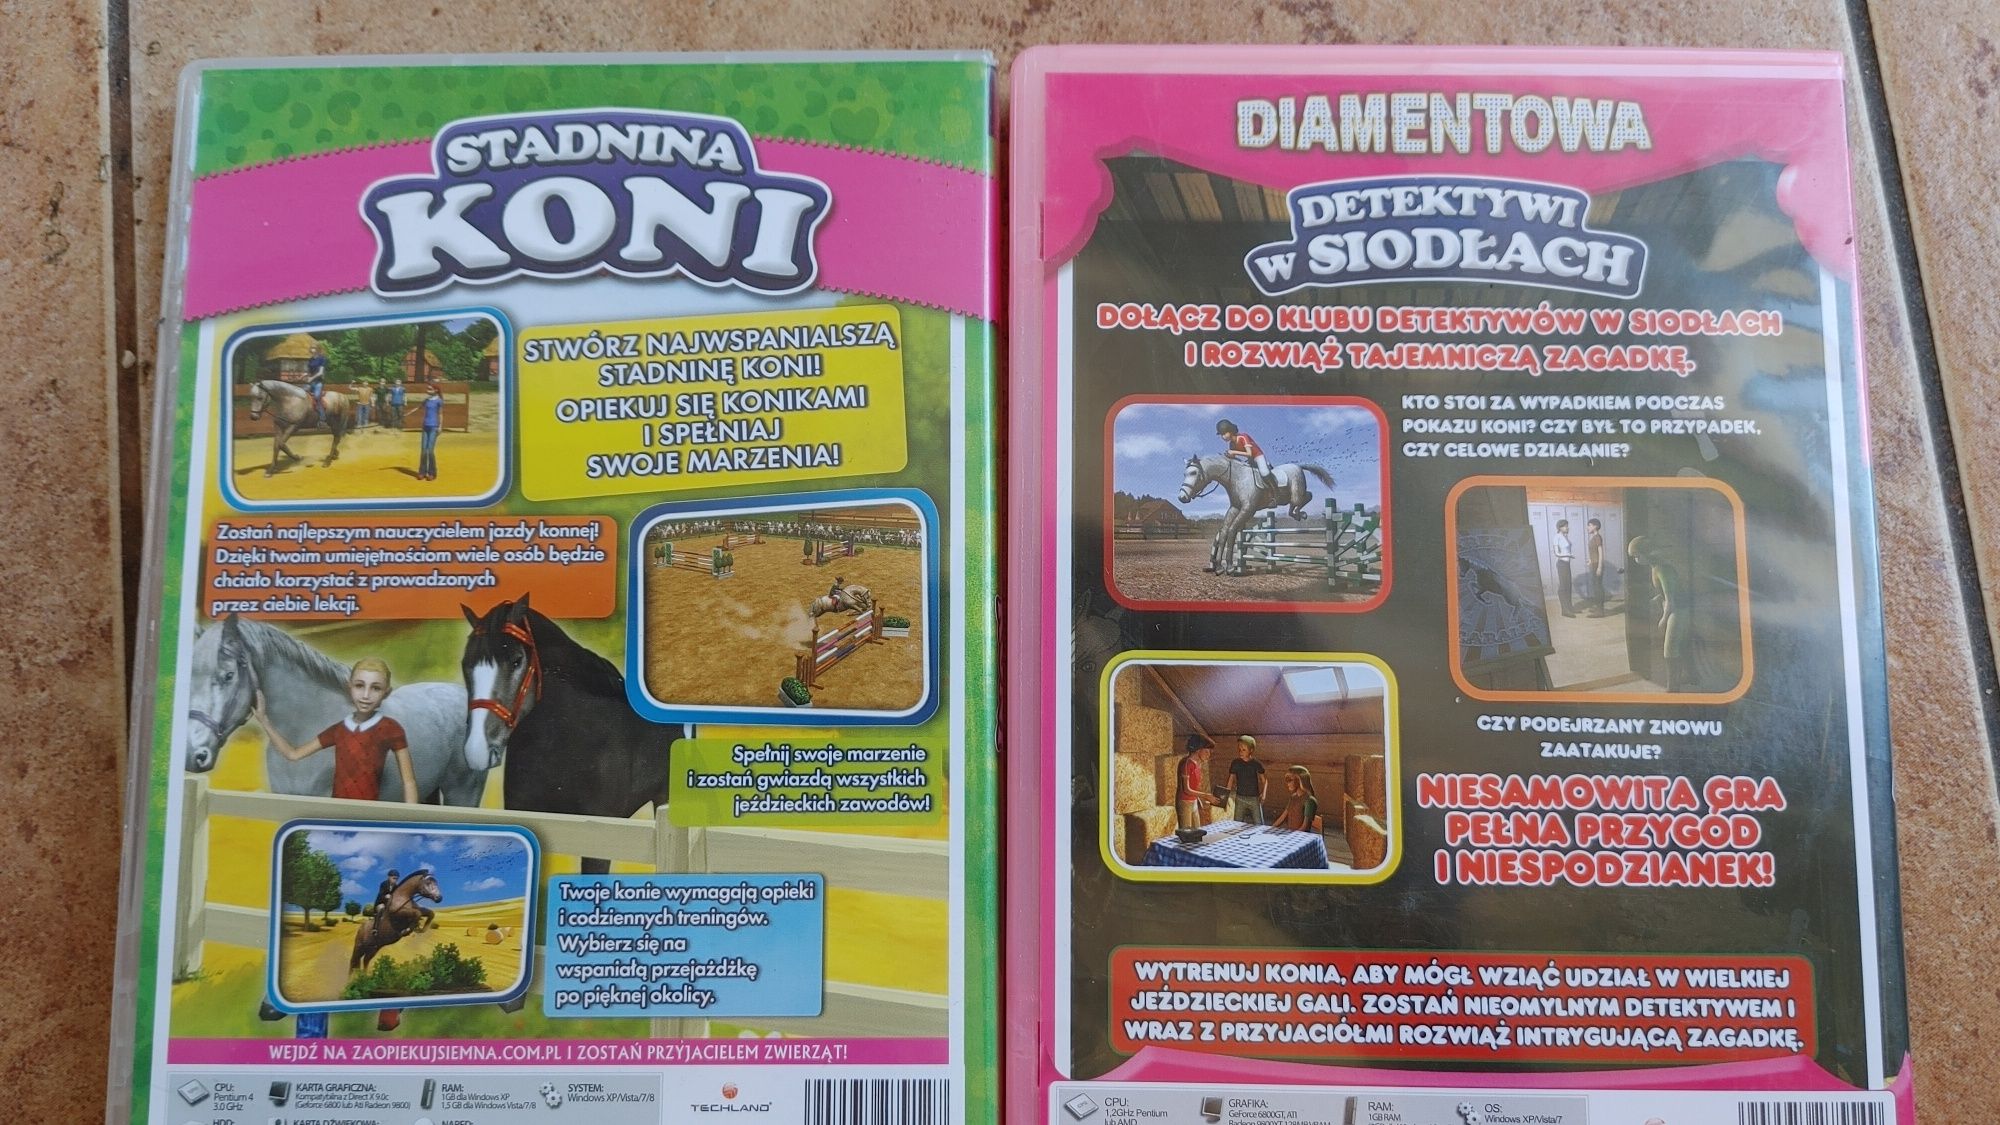 Gry DVD/CD Stadnina Koni i Detektywi w siodłach